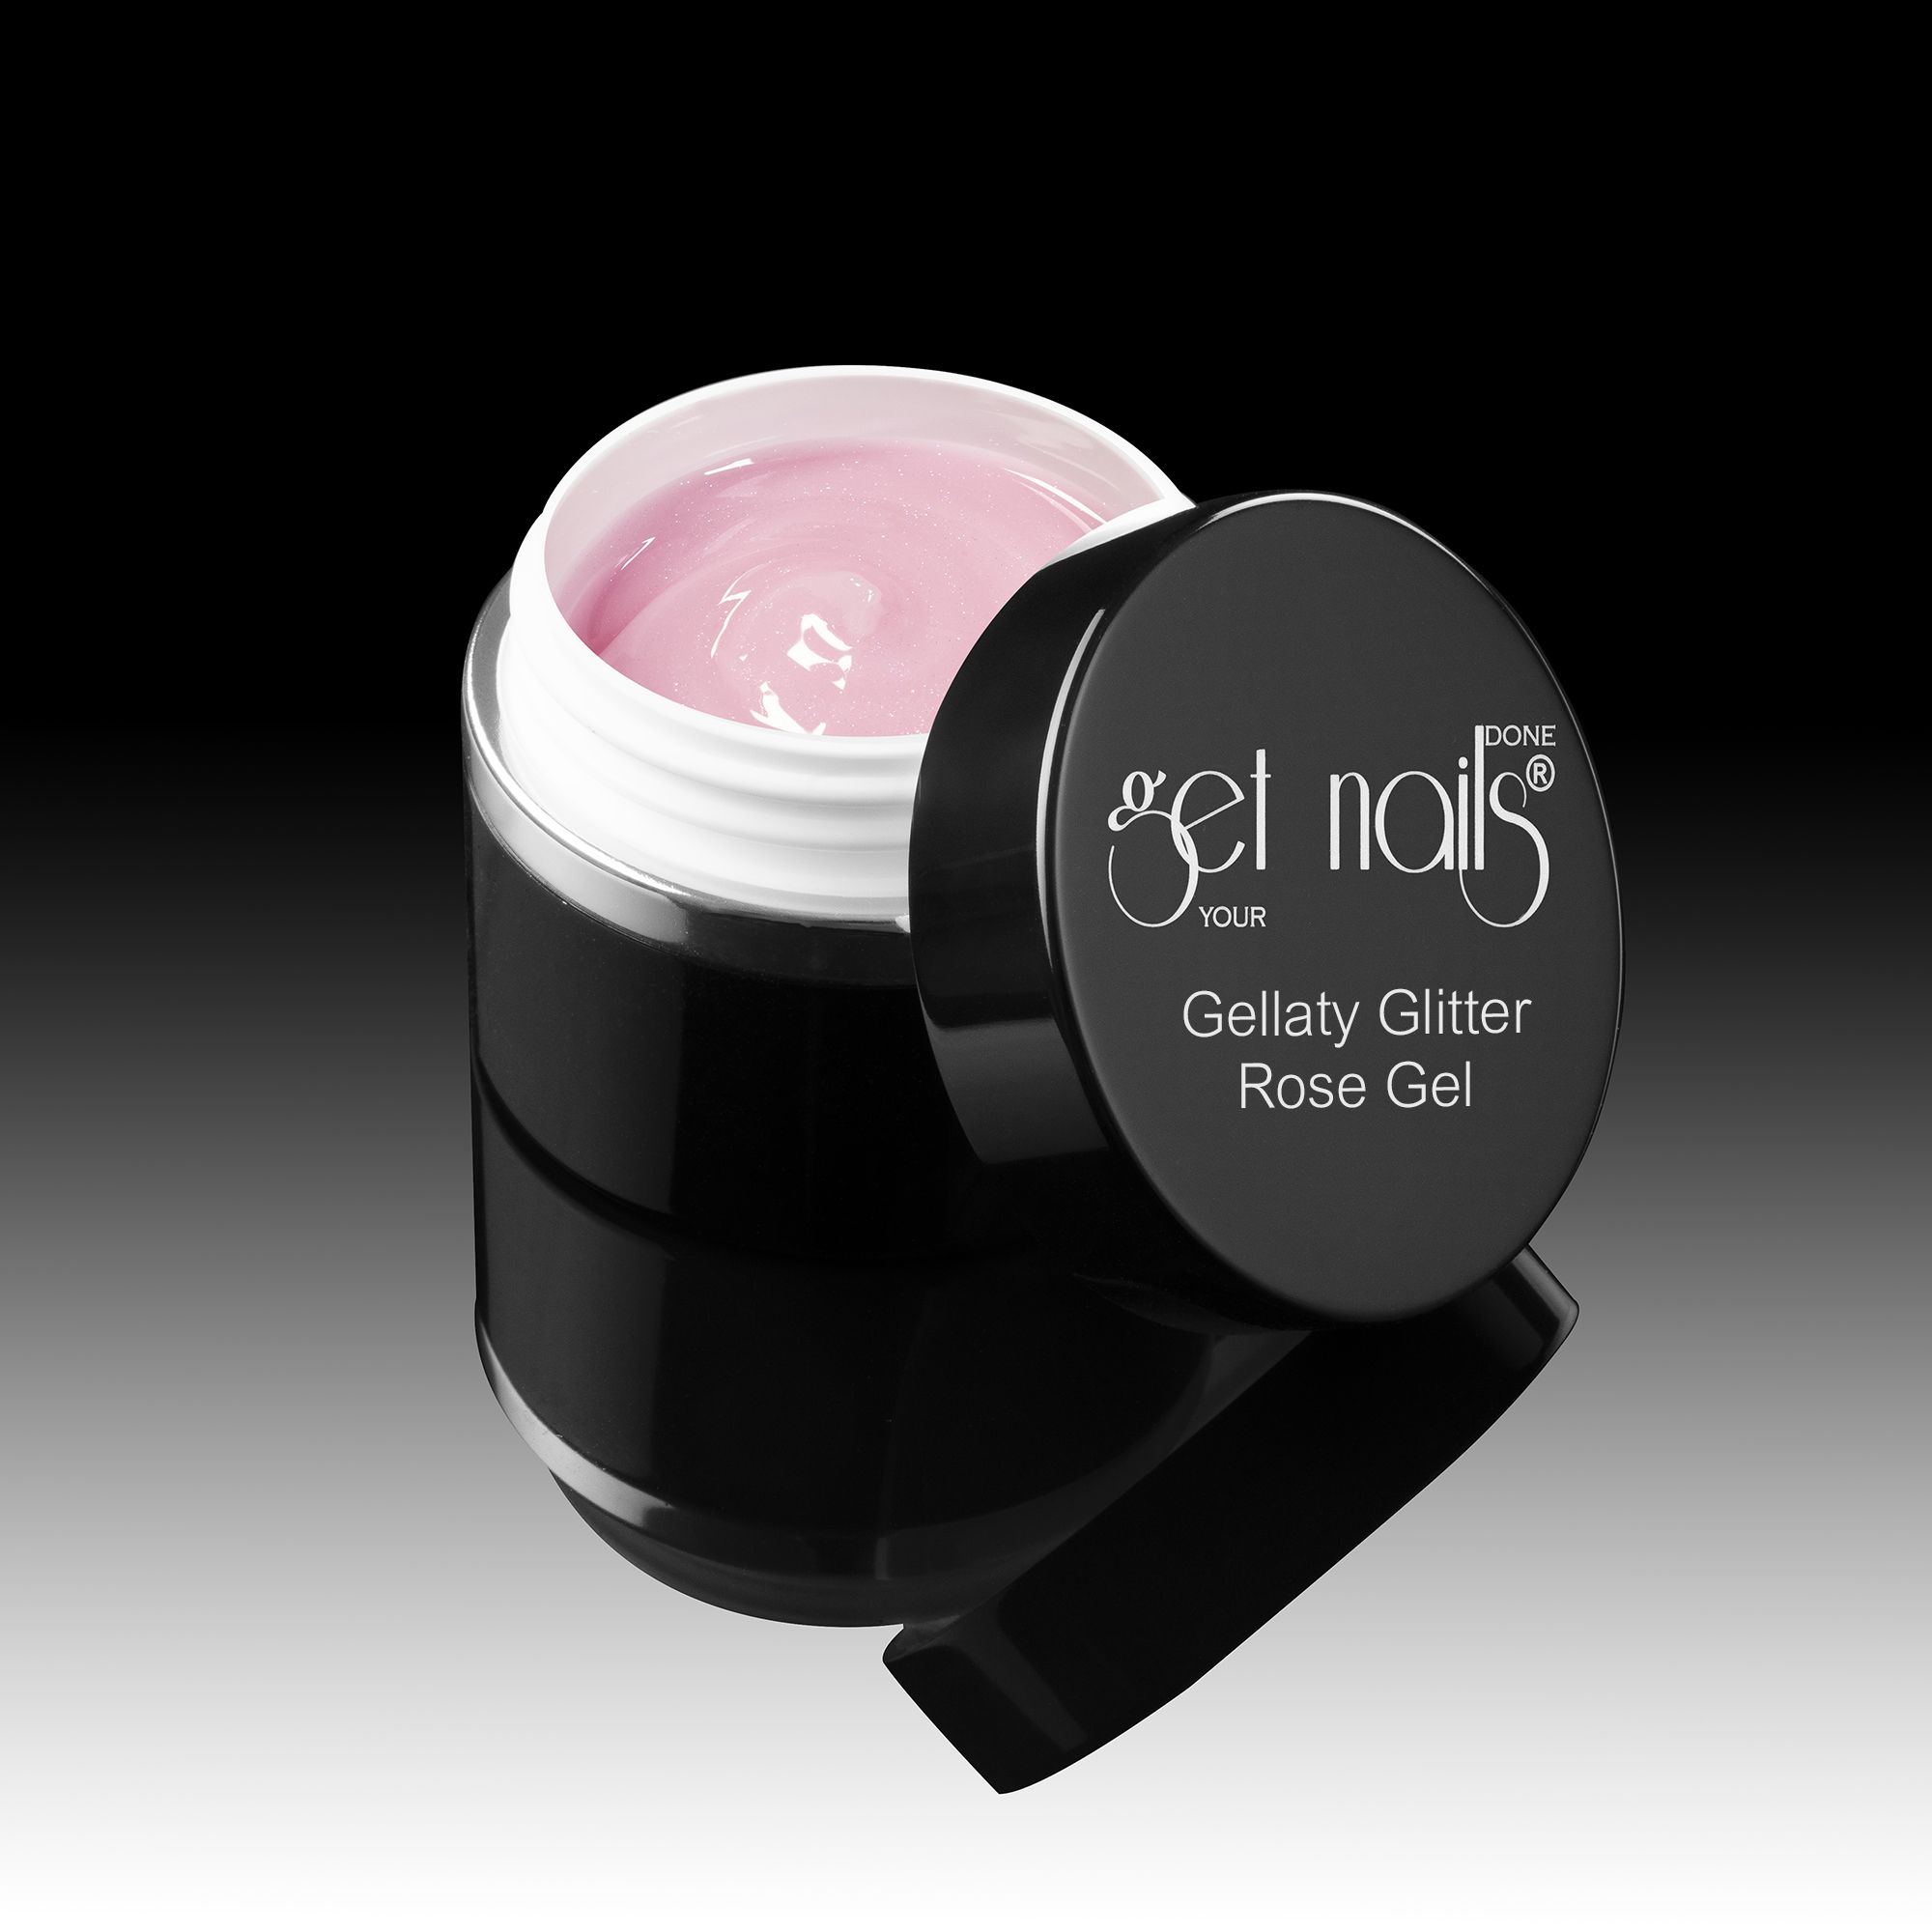 Get Nails Austria - Gelaty Glitter Rose Gel 50g